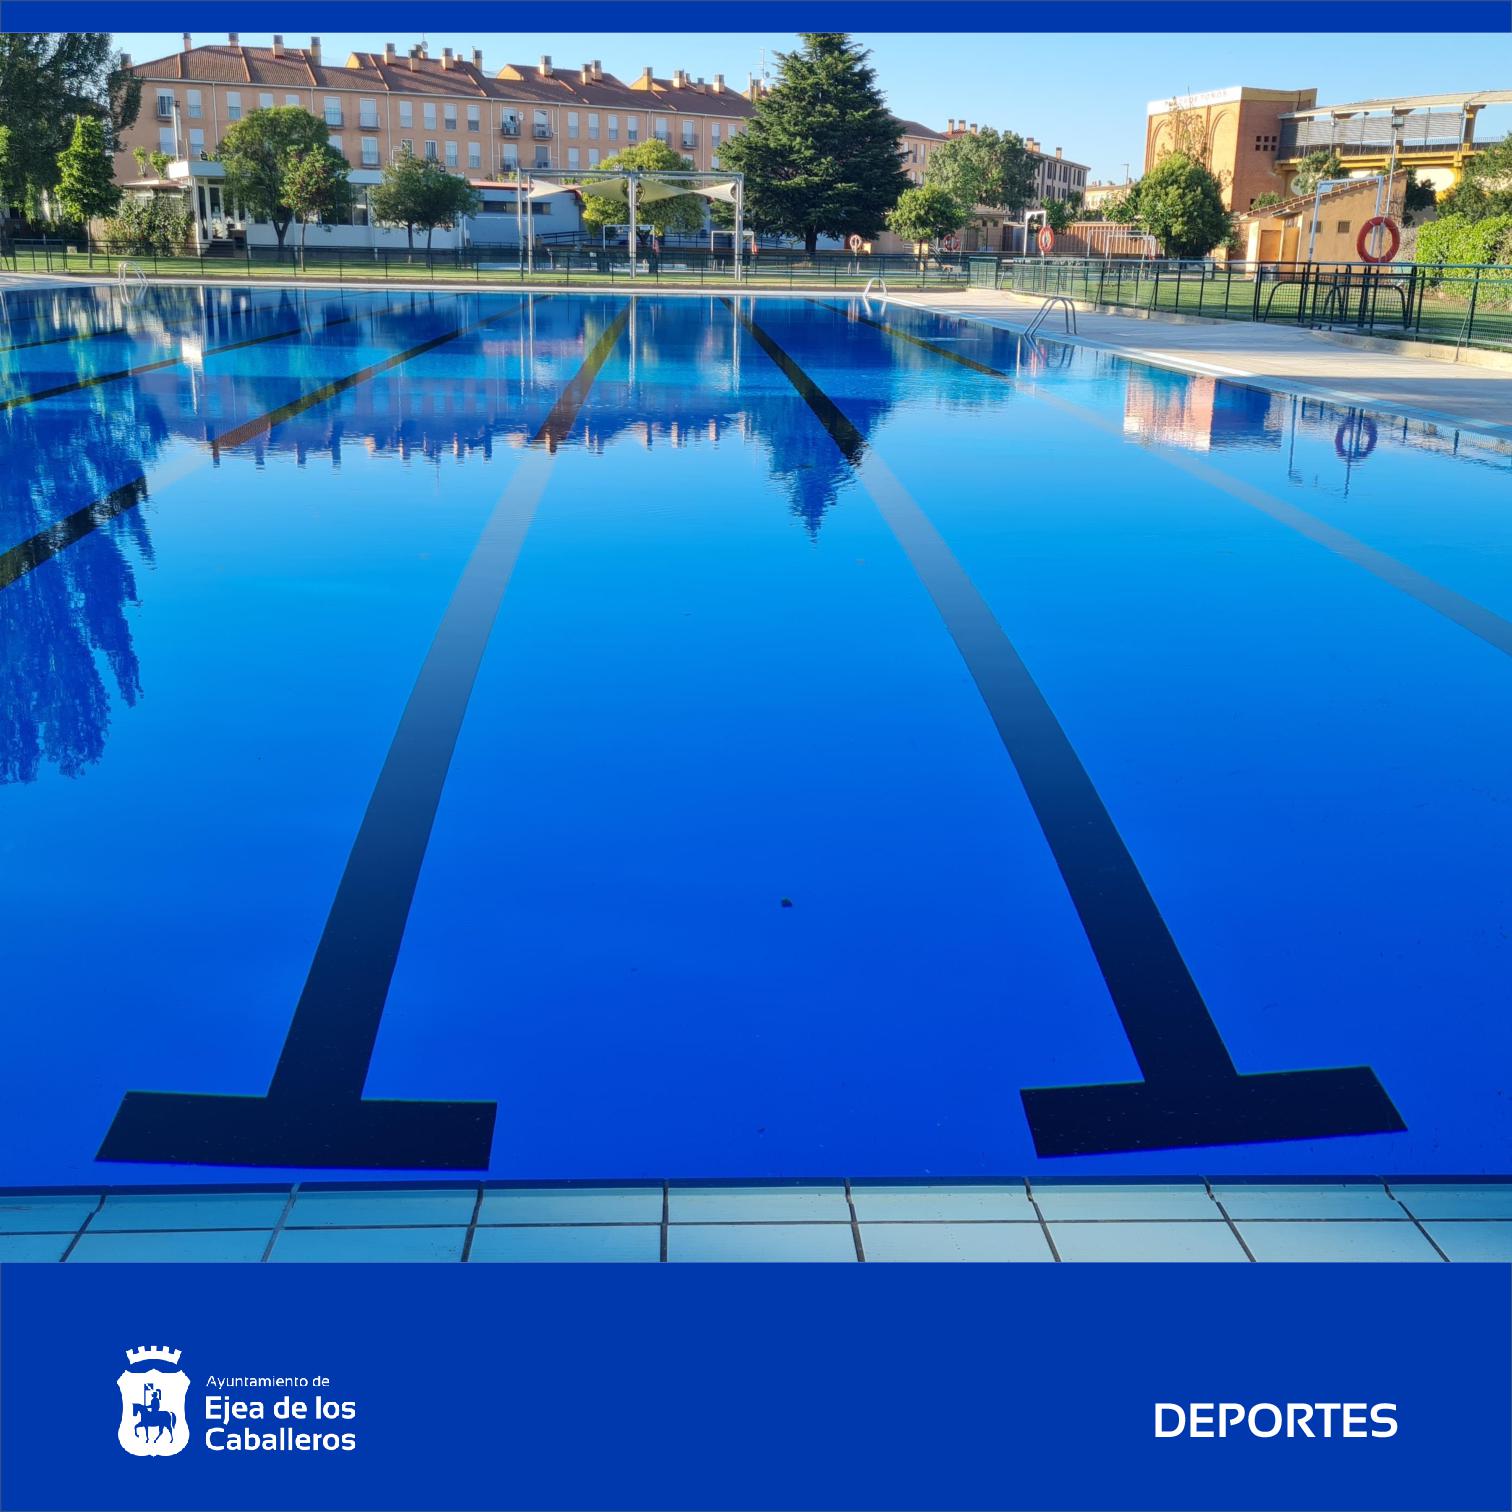 En este momento estás viendo Apertura de las 10 piscinas municipales de Ejea y sus Pueblos